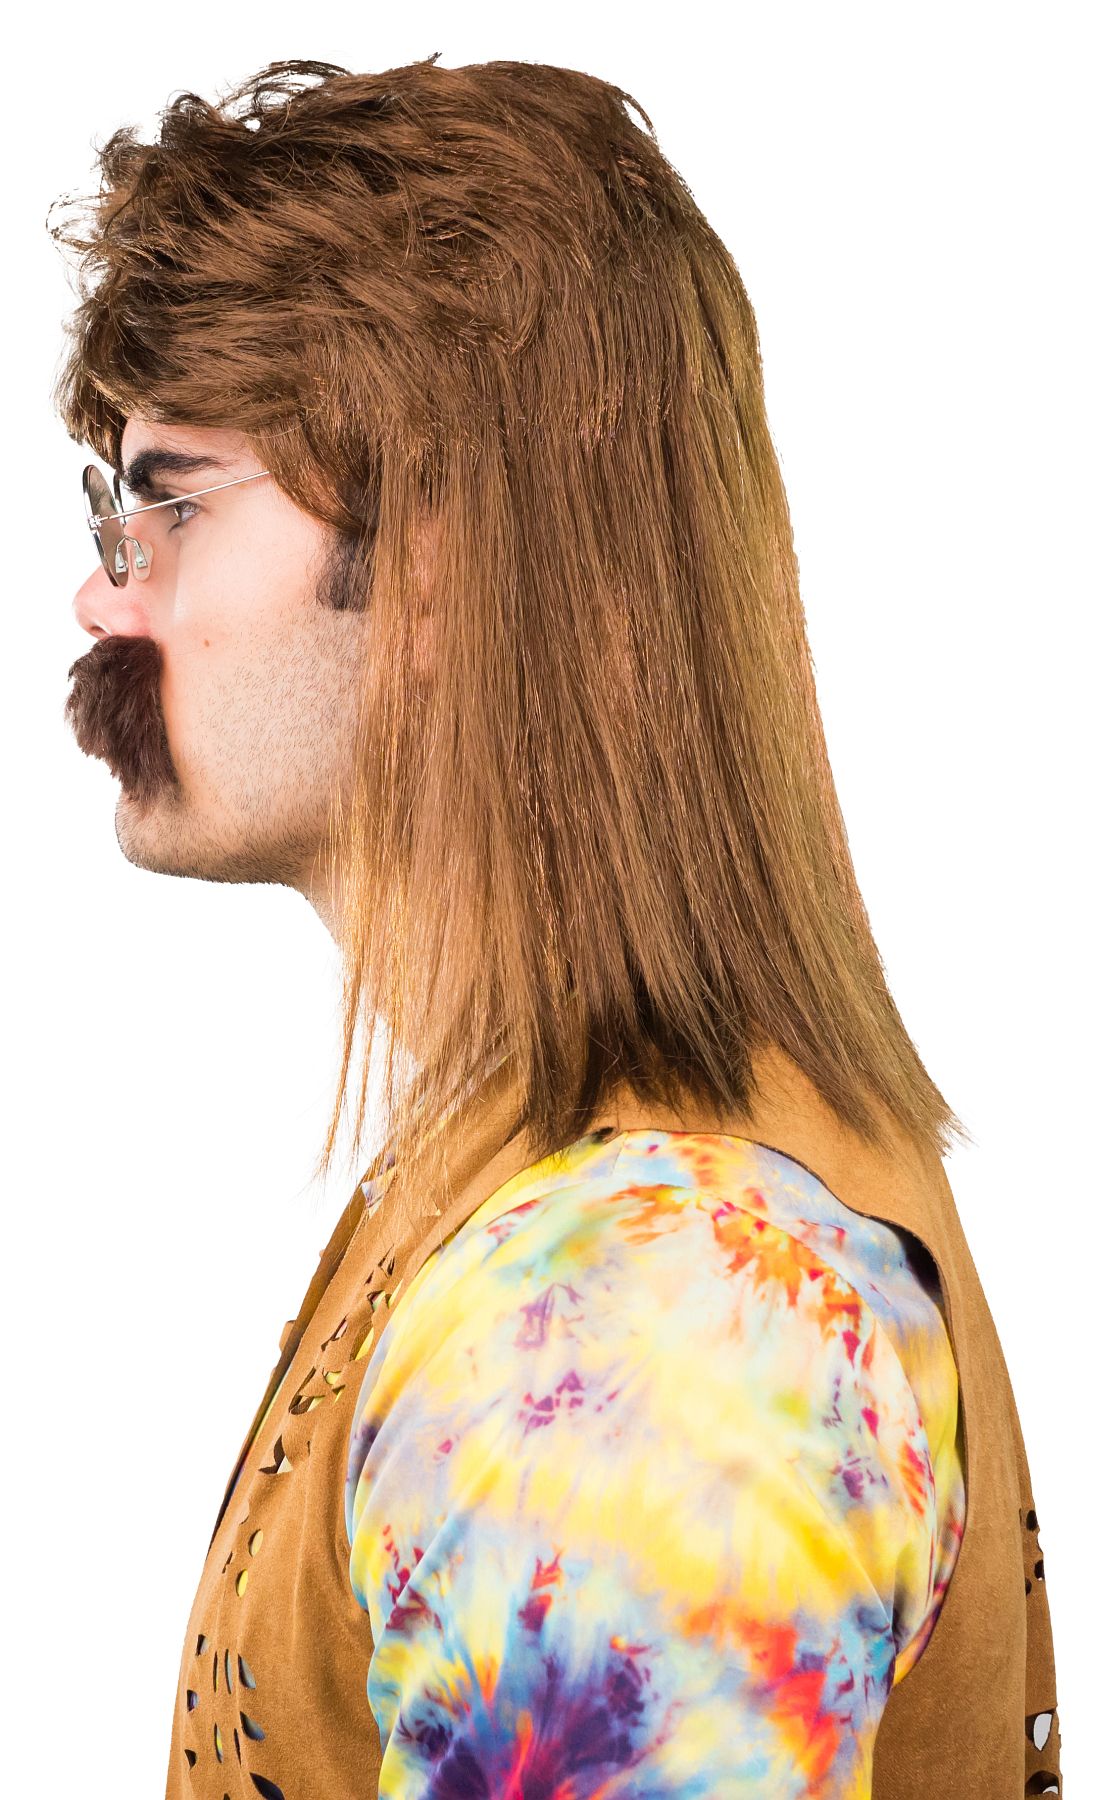 Perruque homme des années 80 avec moustache